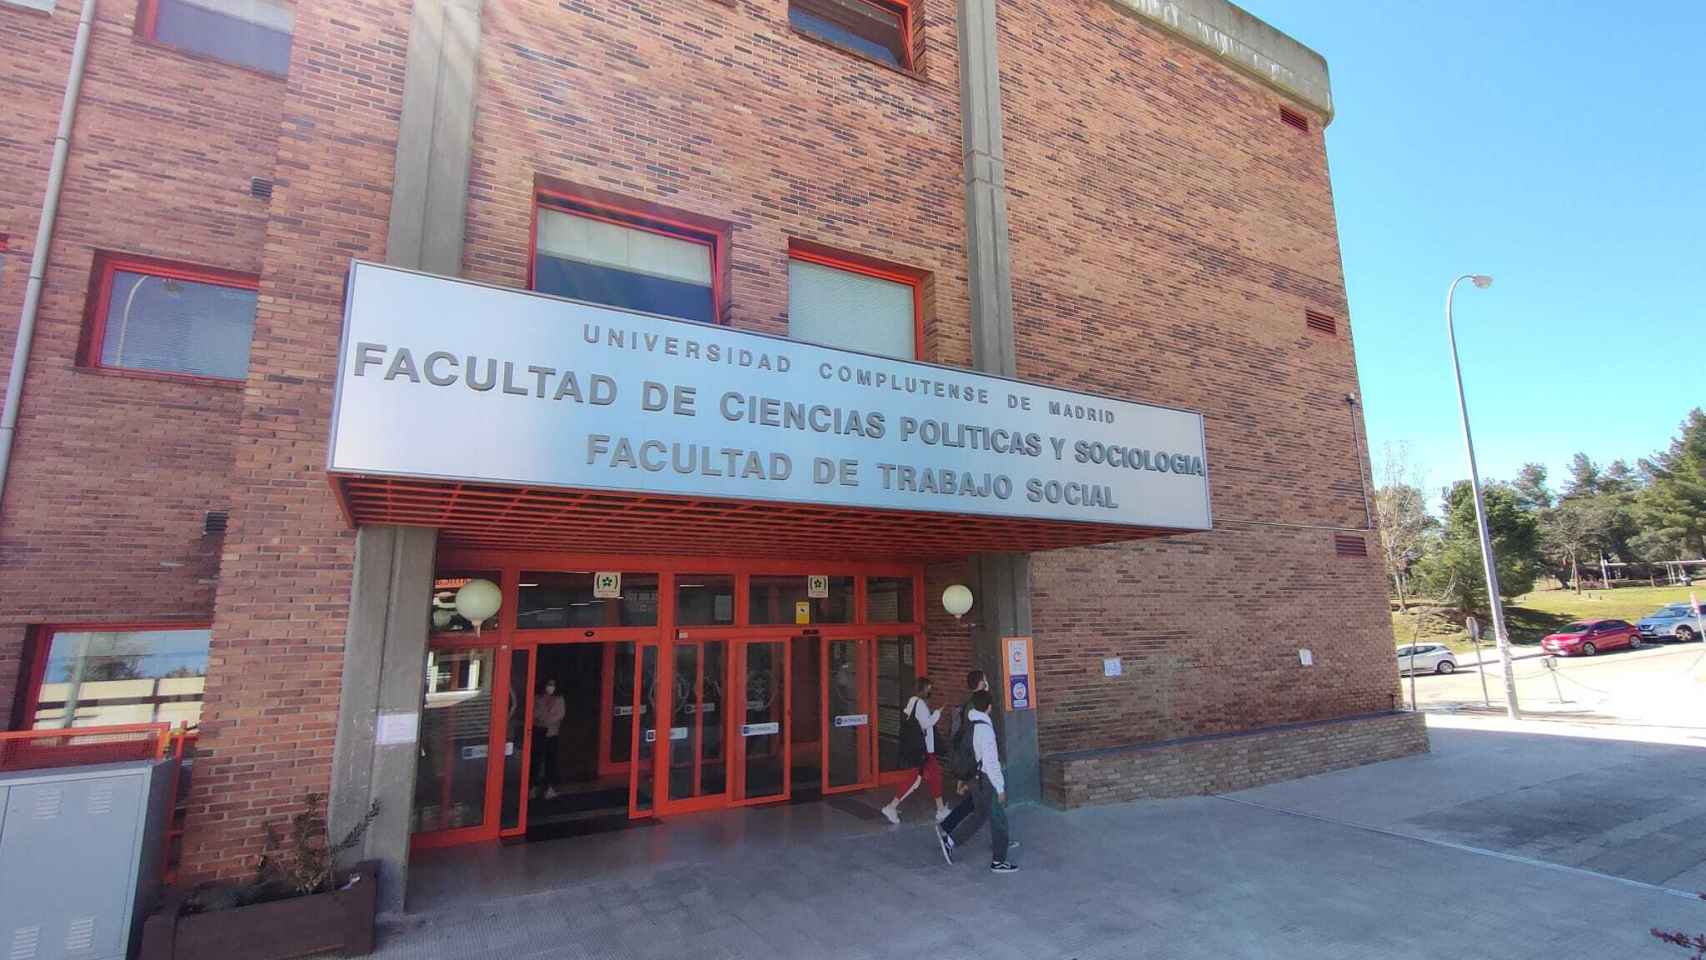 La entrada a la Facultad de Ciencias Políticas y Sociología de la UCM.